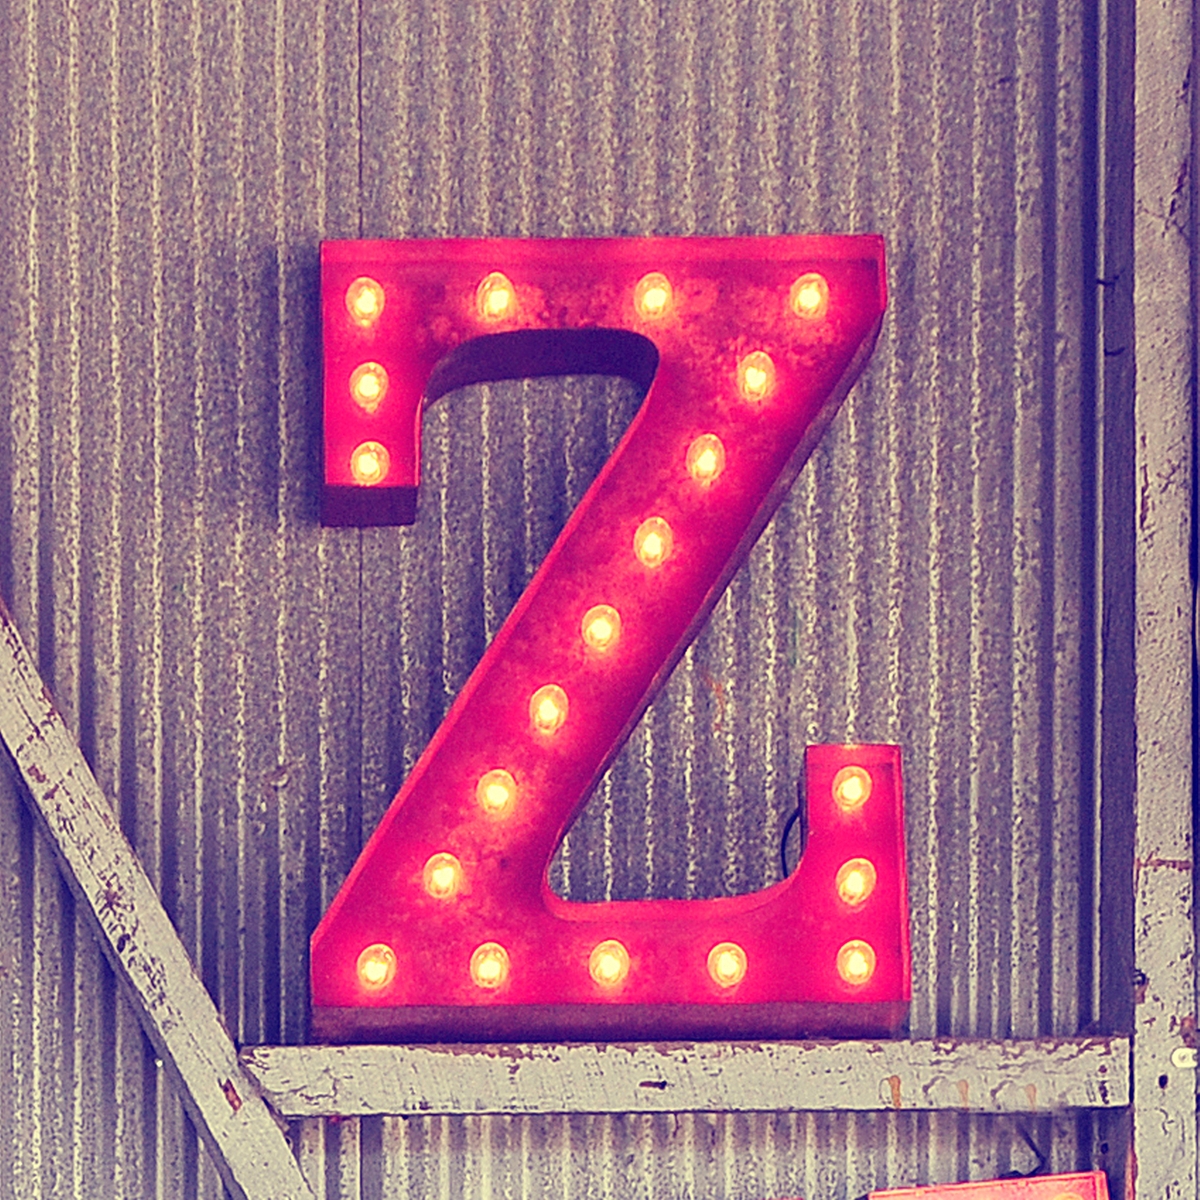 صور حرف Z , صور حرف Z مزخرفة , خلفيات جديدة 2021 letter Z pictures